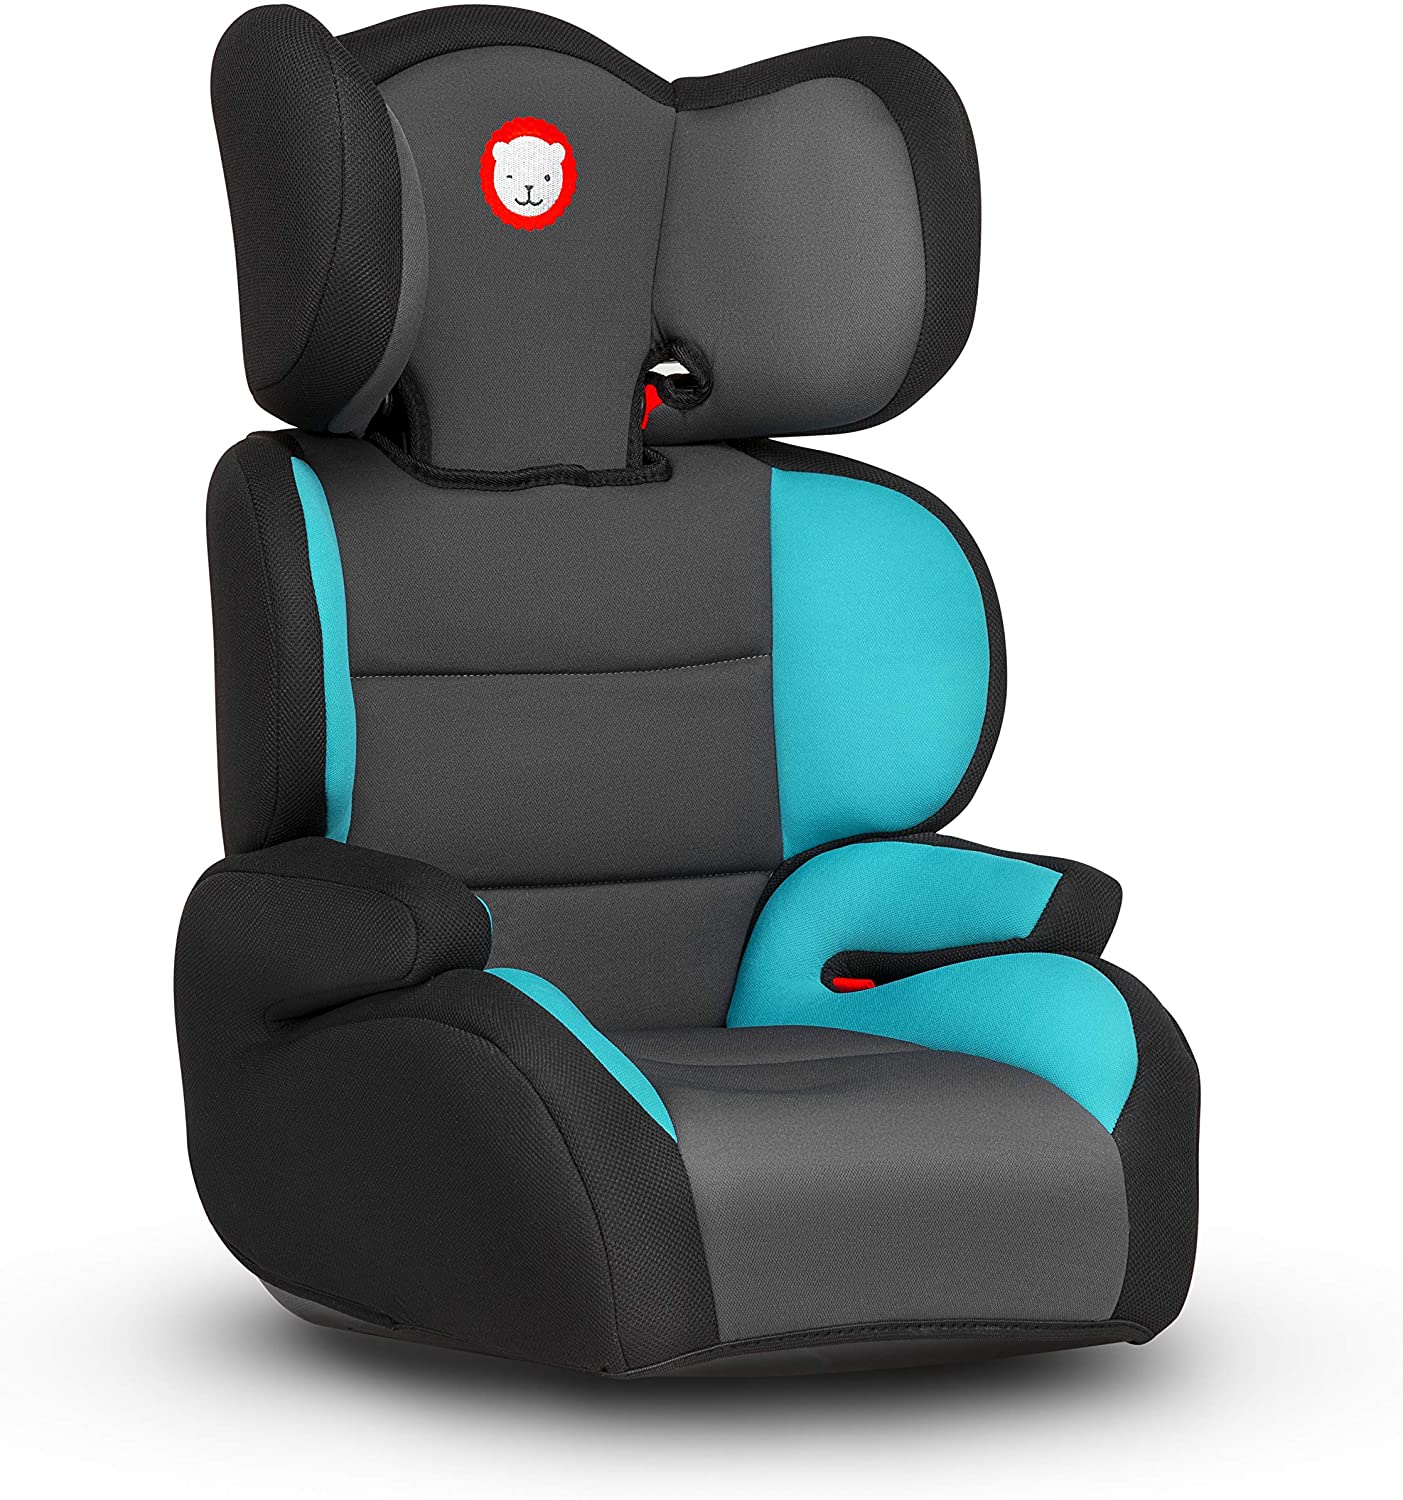 Lionelo Lars Plus Child Car Seat Booster Seat Group 2 3 (15-36 kg) ImpactGuard Construction ECE R44/04